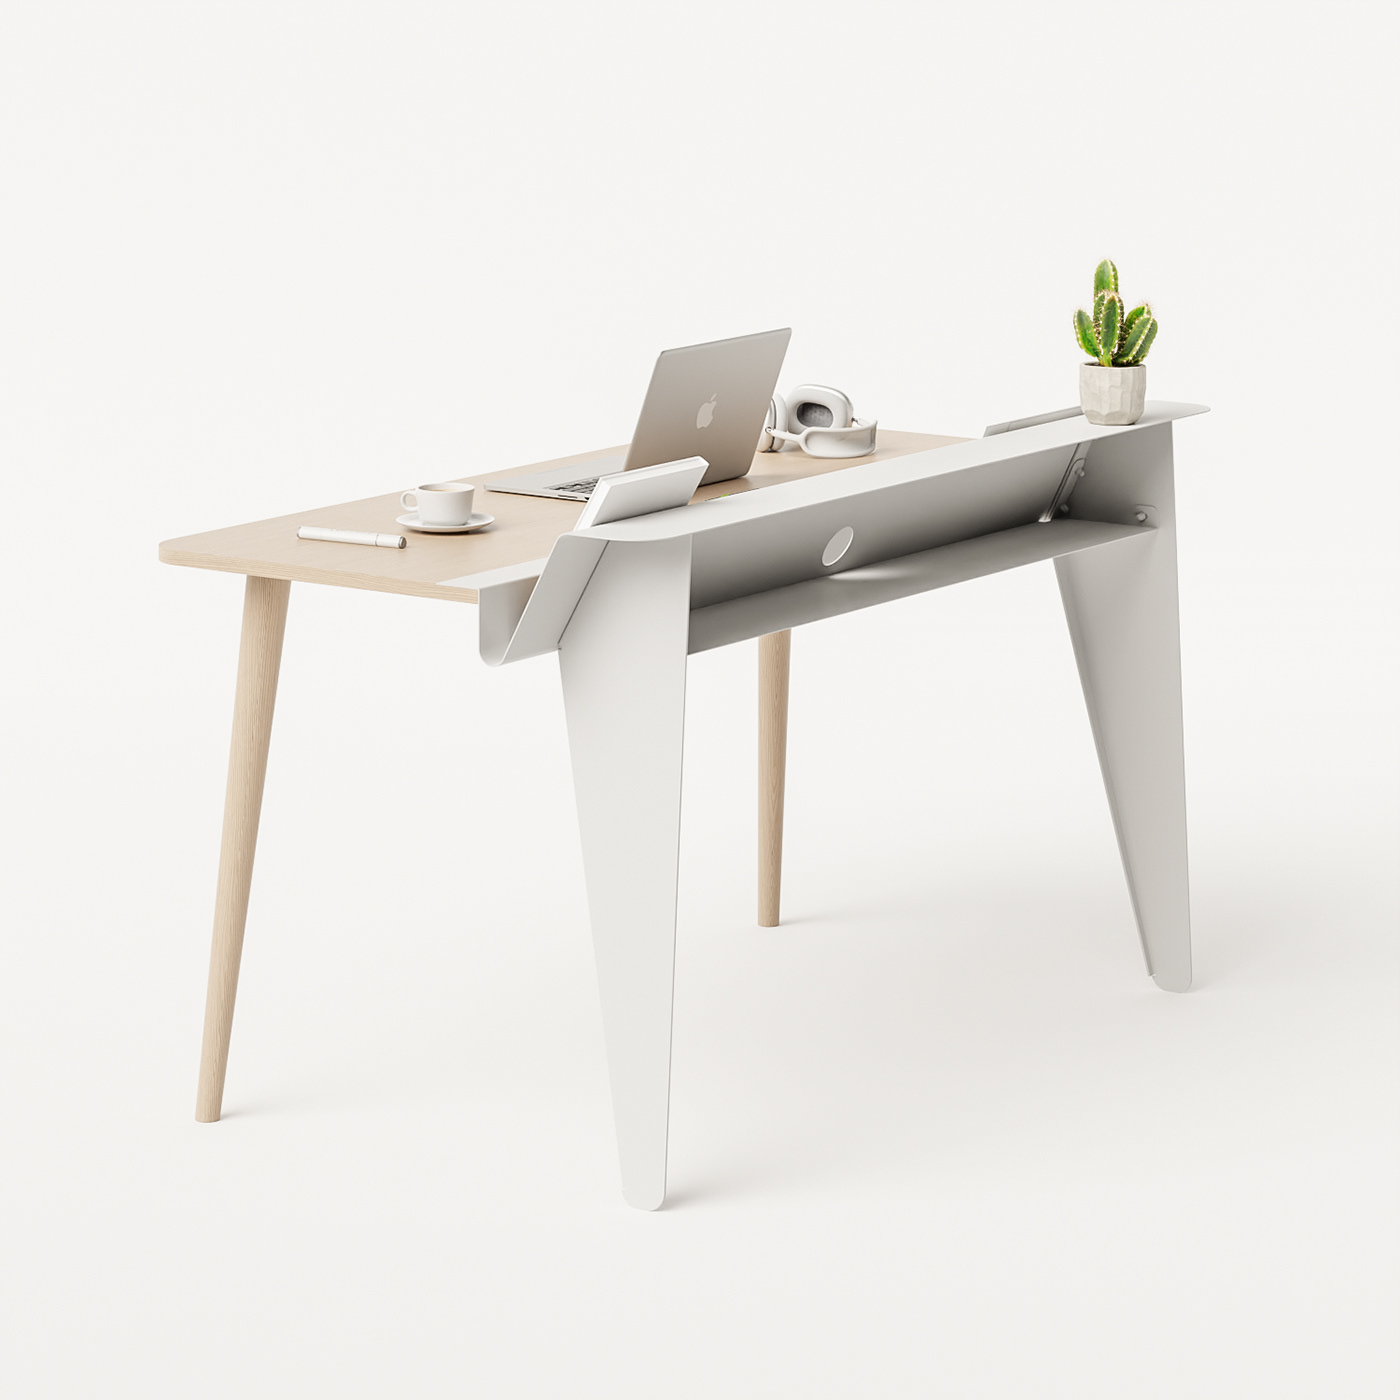 design desk desk design furniture metal minimal design office furniture table design wood Work desk